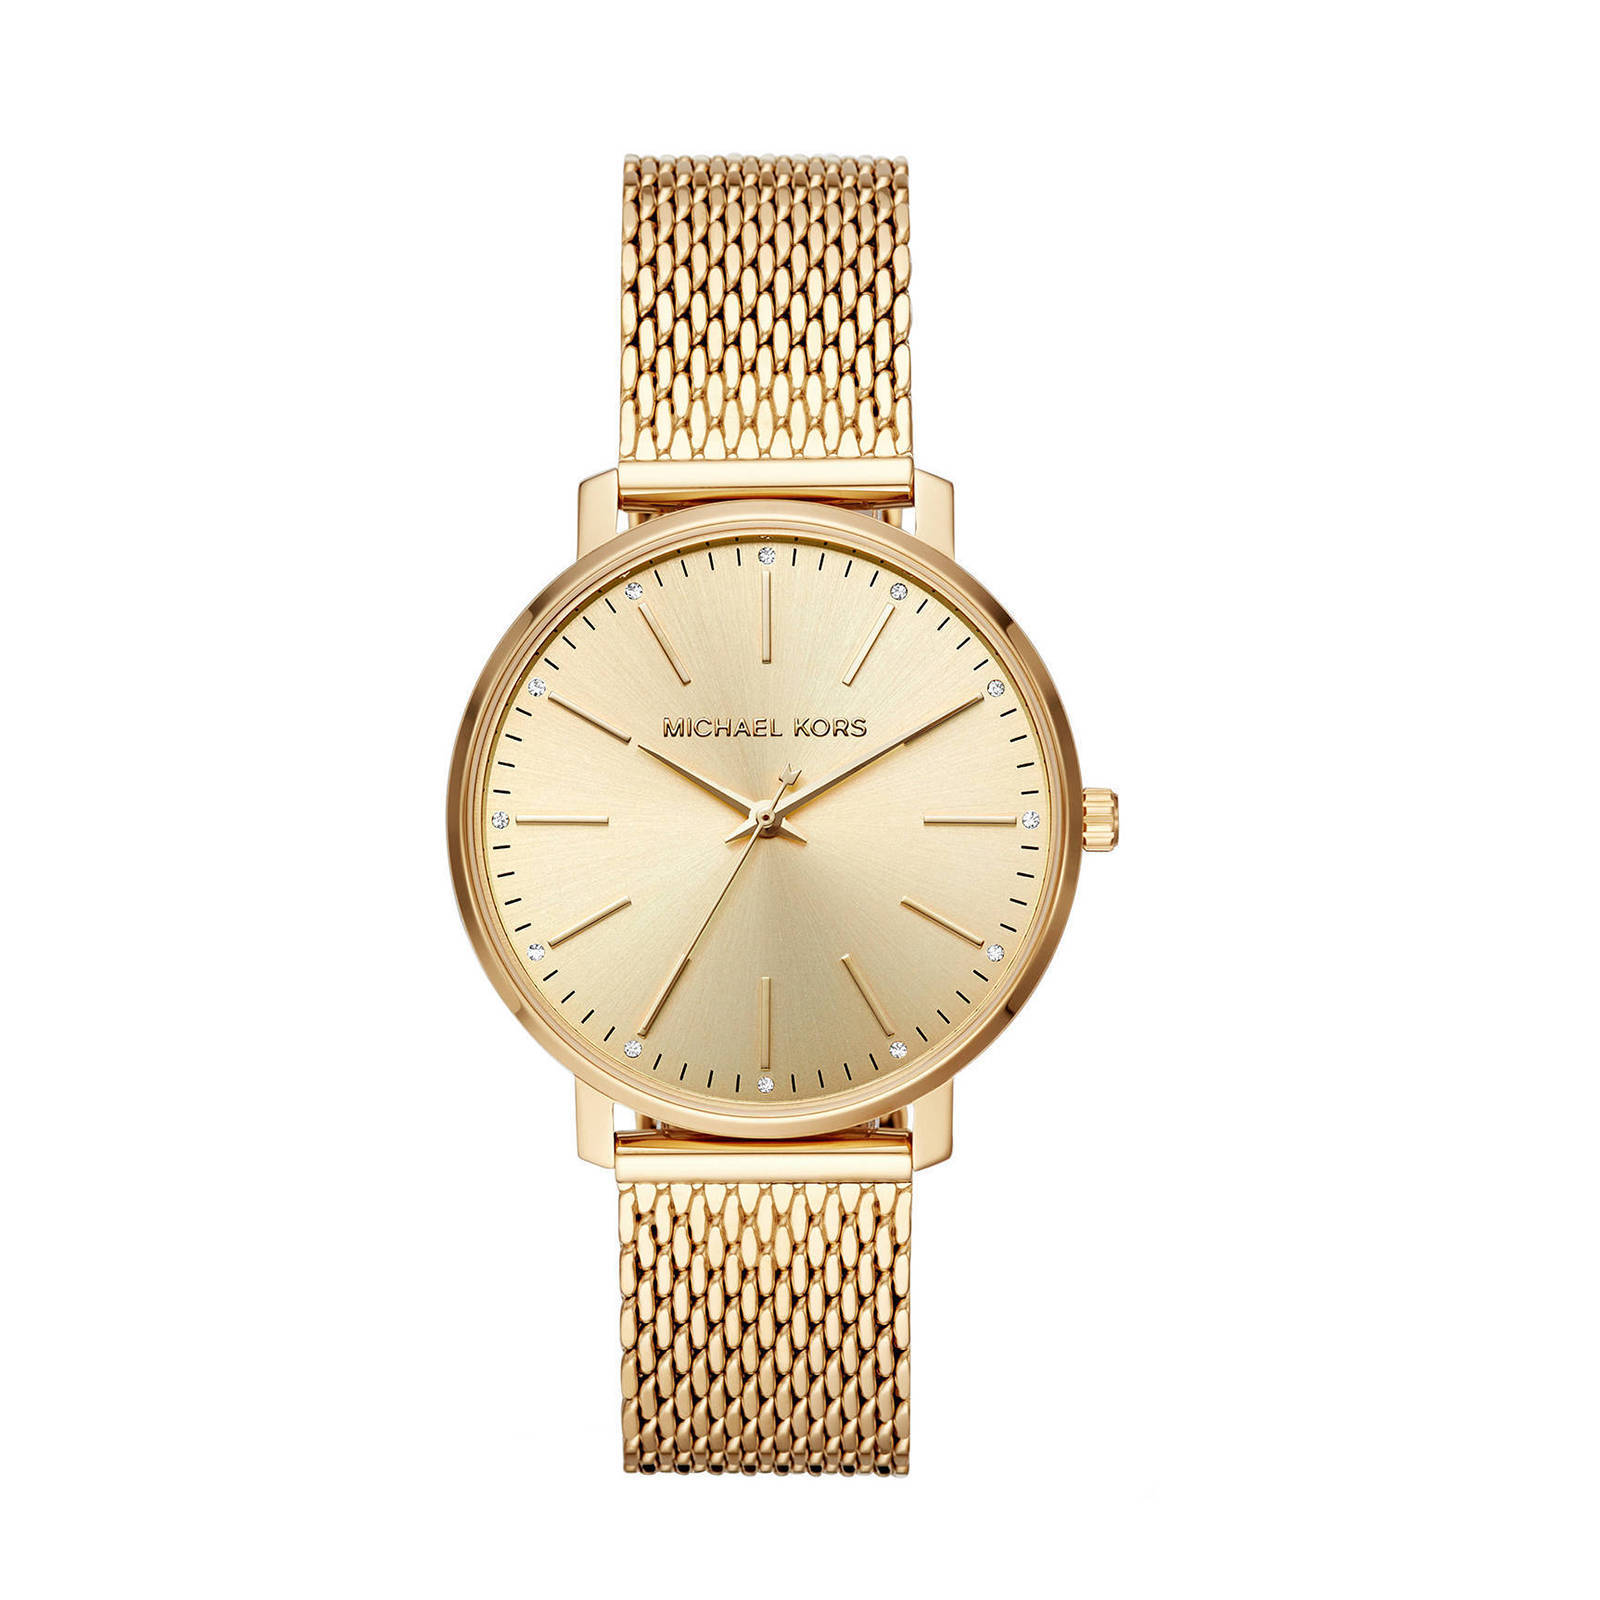 Michael Kors dames horloges SALE  Michael Kors horloges voor dames in de  uitverkoop  KLEDINGnl